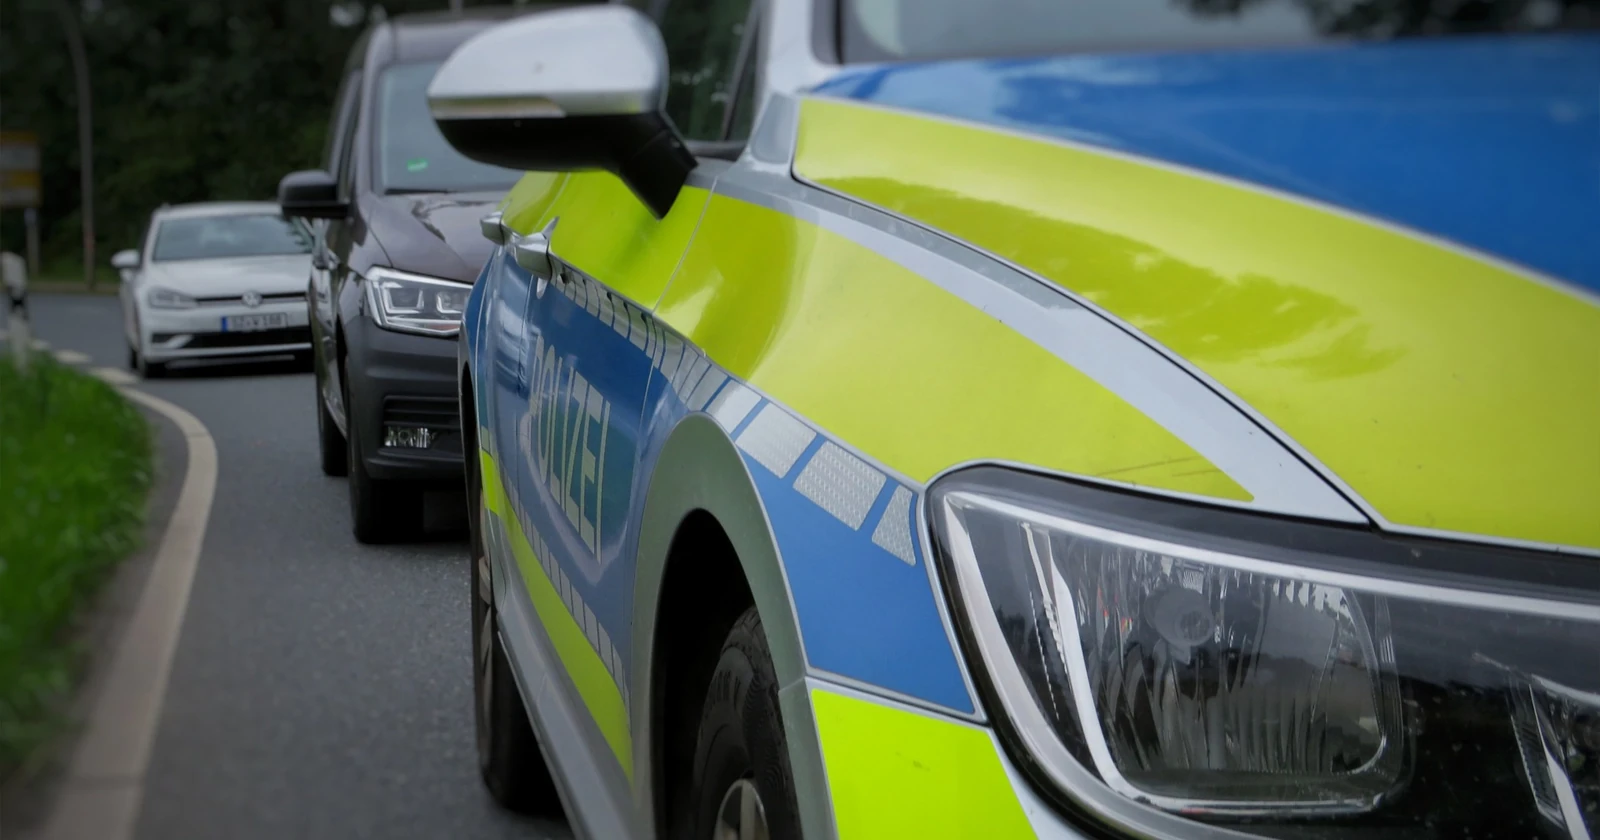 Unbekannte entwenden Katalysatoren von abgestellten Wagen - Polizei sucht Zeugen